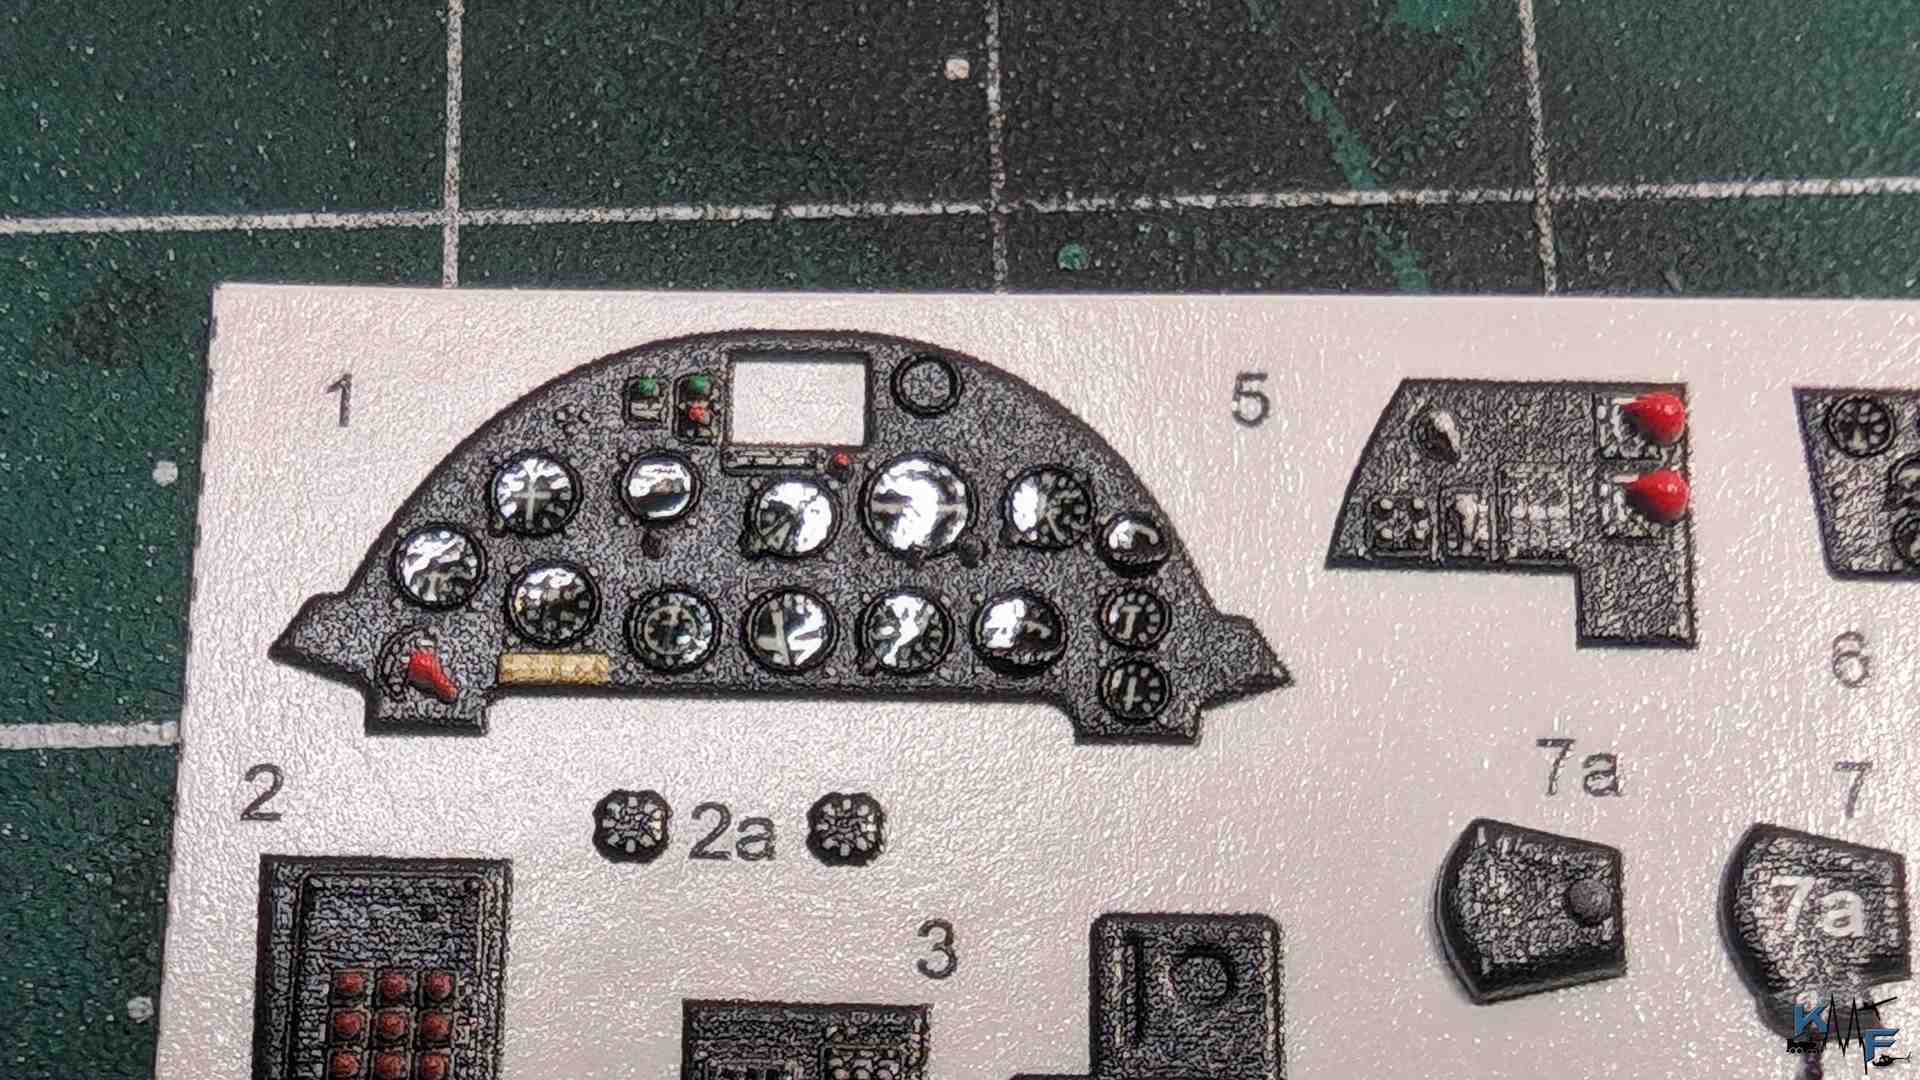 BV-QUINTA-STUDIO-F4U-1A-Corsair_06